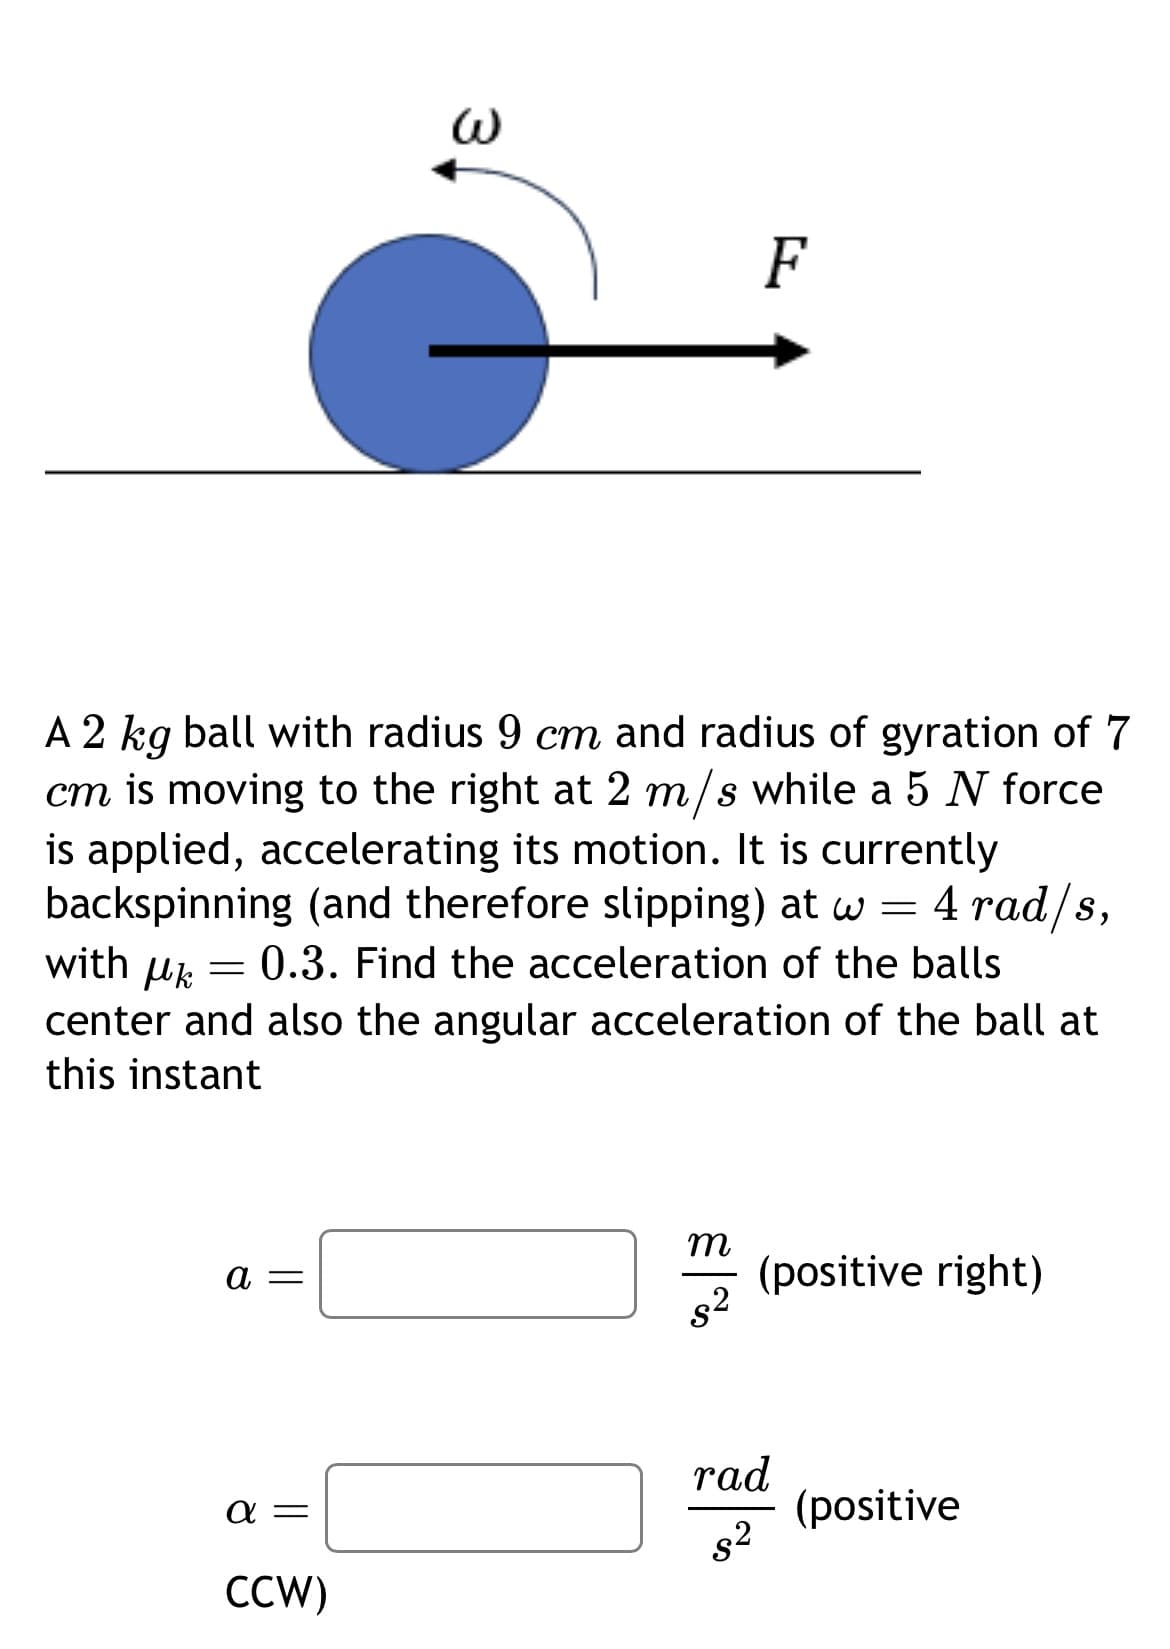 ω
F
A 2 kg ball with radius 9 cm and radius of gyration of 7
cm is moving to the right at 2 m/s while a 5 N force
is applied, accelerating its motion. It is currently
backspinning (and therefore slipping) at w = 4 rad/s,
with μk
= 0.3. Find the acceleration of the balls
center and also the angular acceleration of the ball at
this instant
a =
m
(positive right)
$2
rad
απ
(positive
$2
CCW)